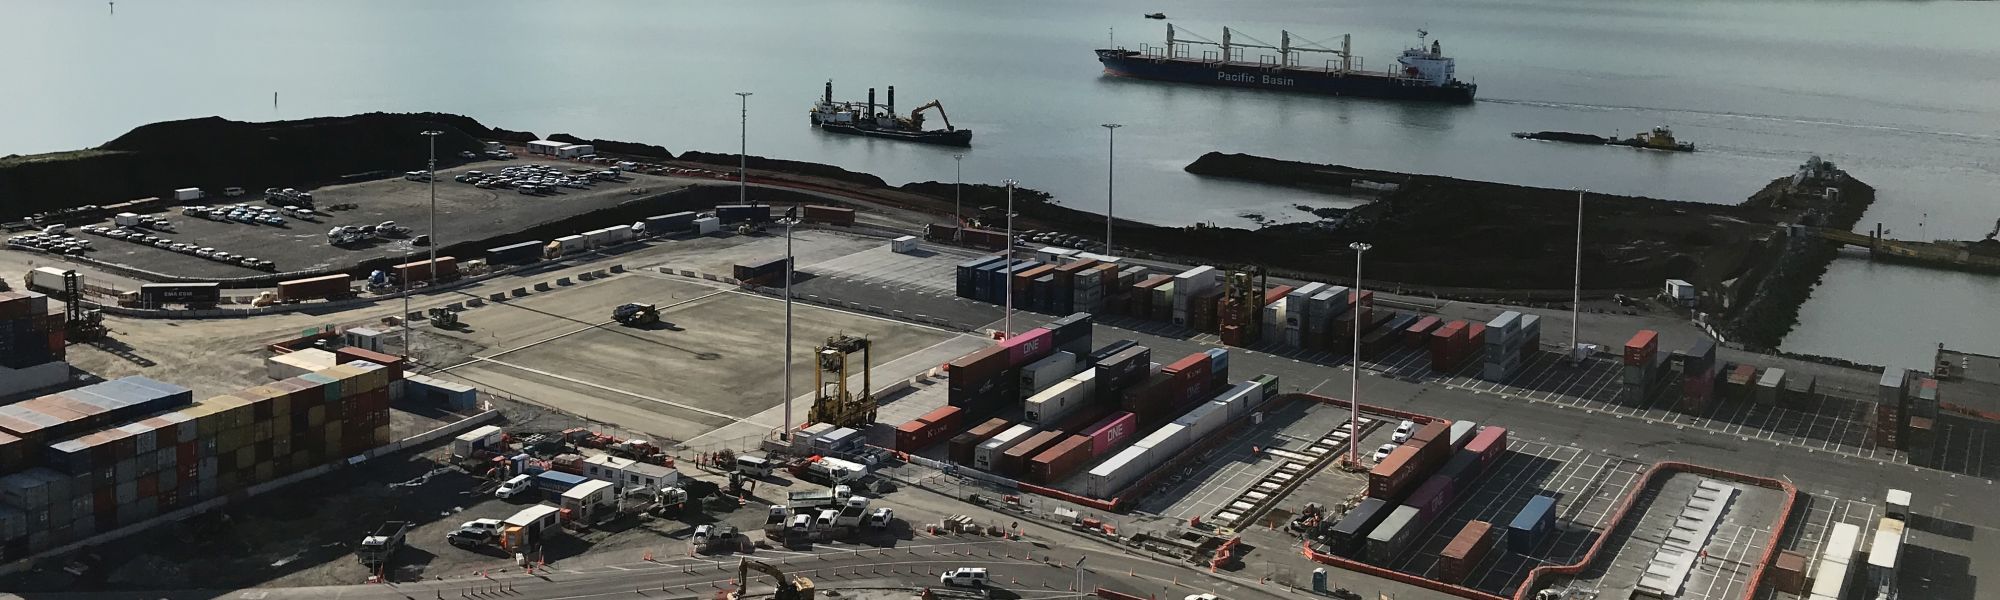 Container Terminal Enhancement & Development Plan for LPC